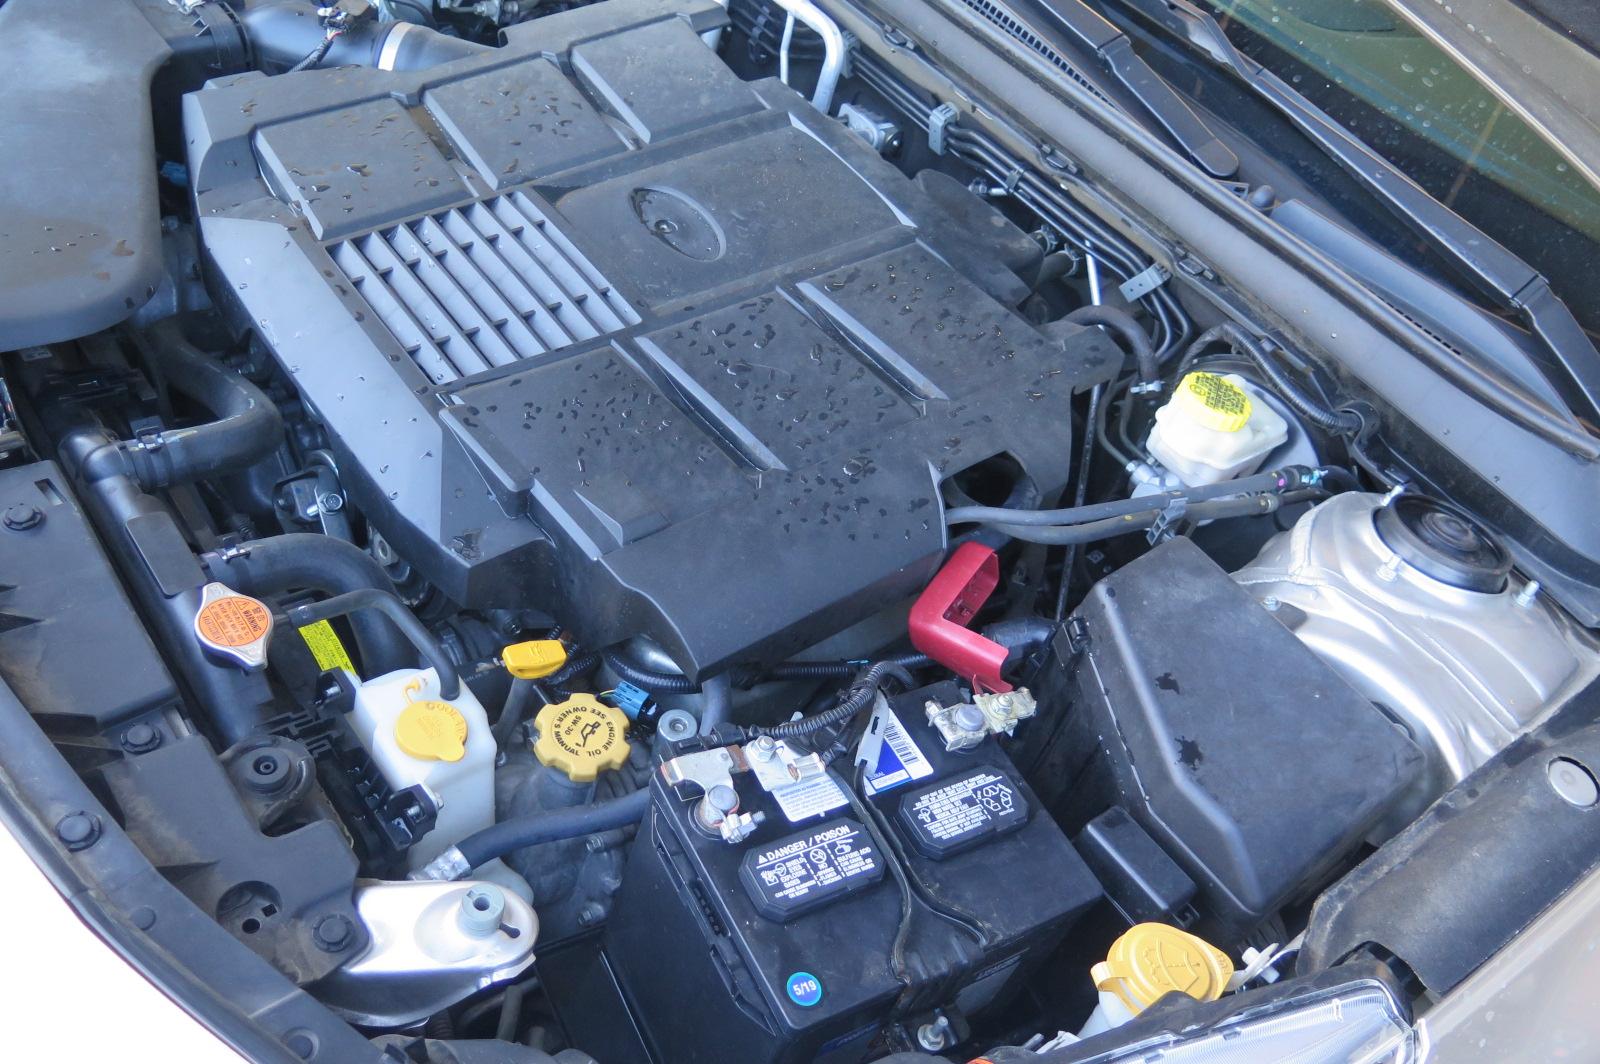 2015 Lexus ES 300h Engine Assembly